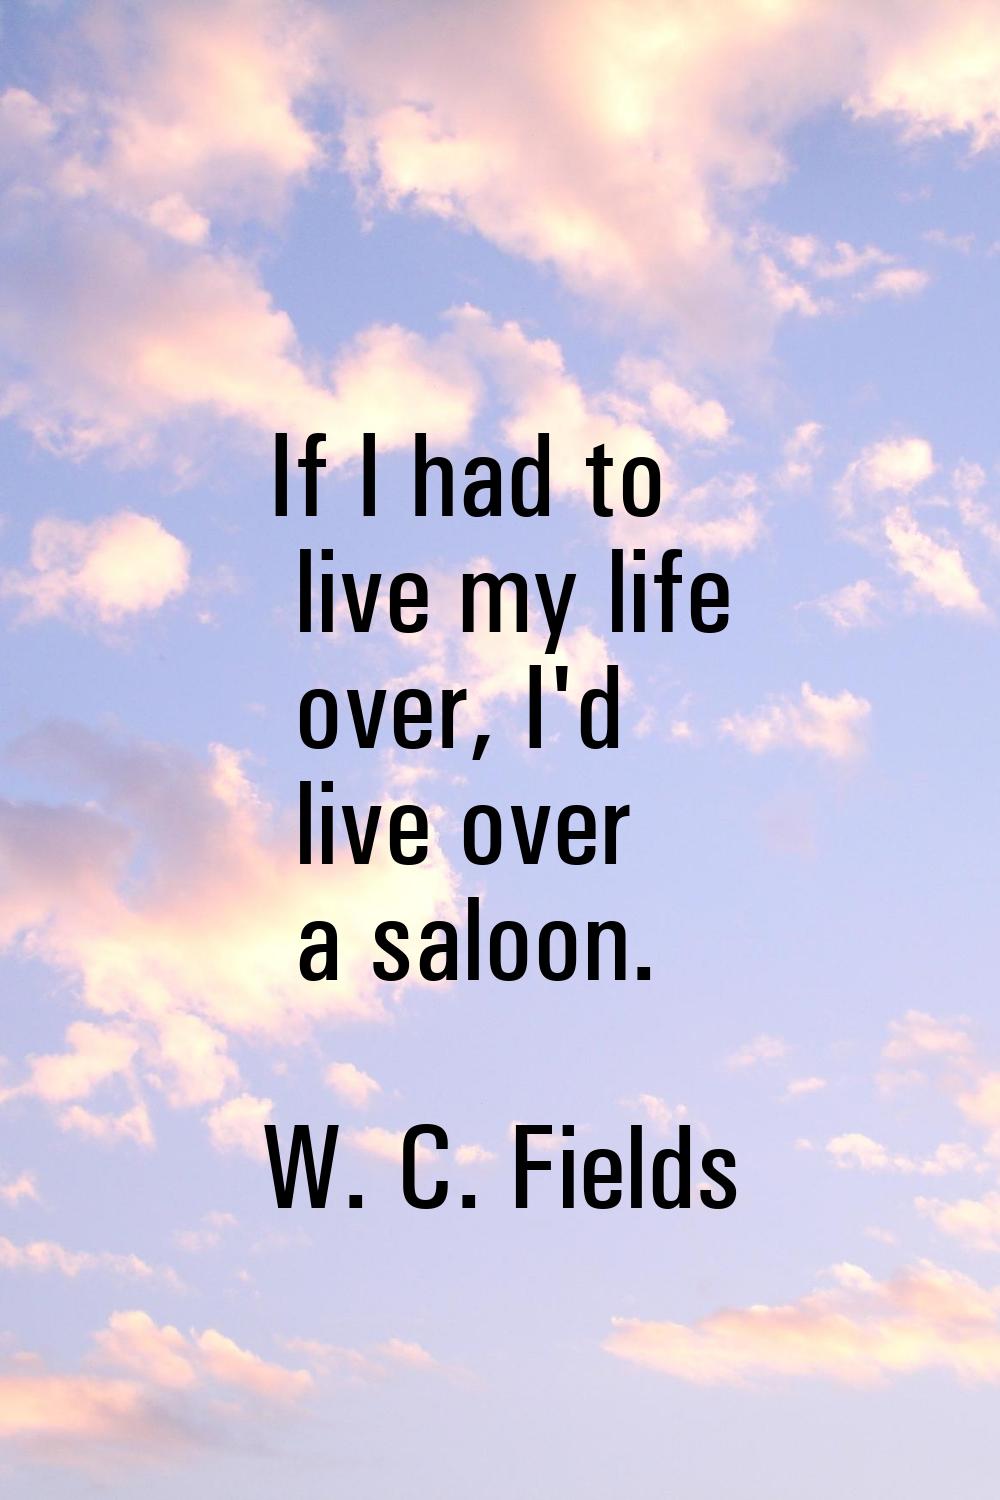 If I had to live my life over, I'd live over a saloon.